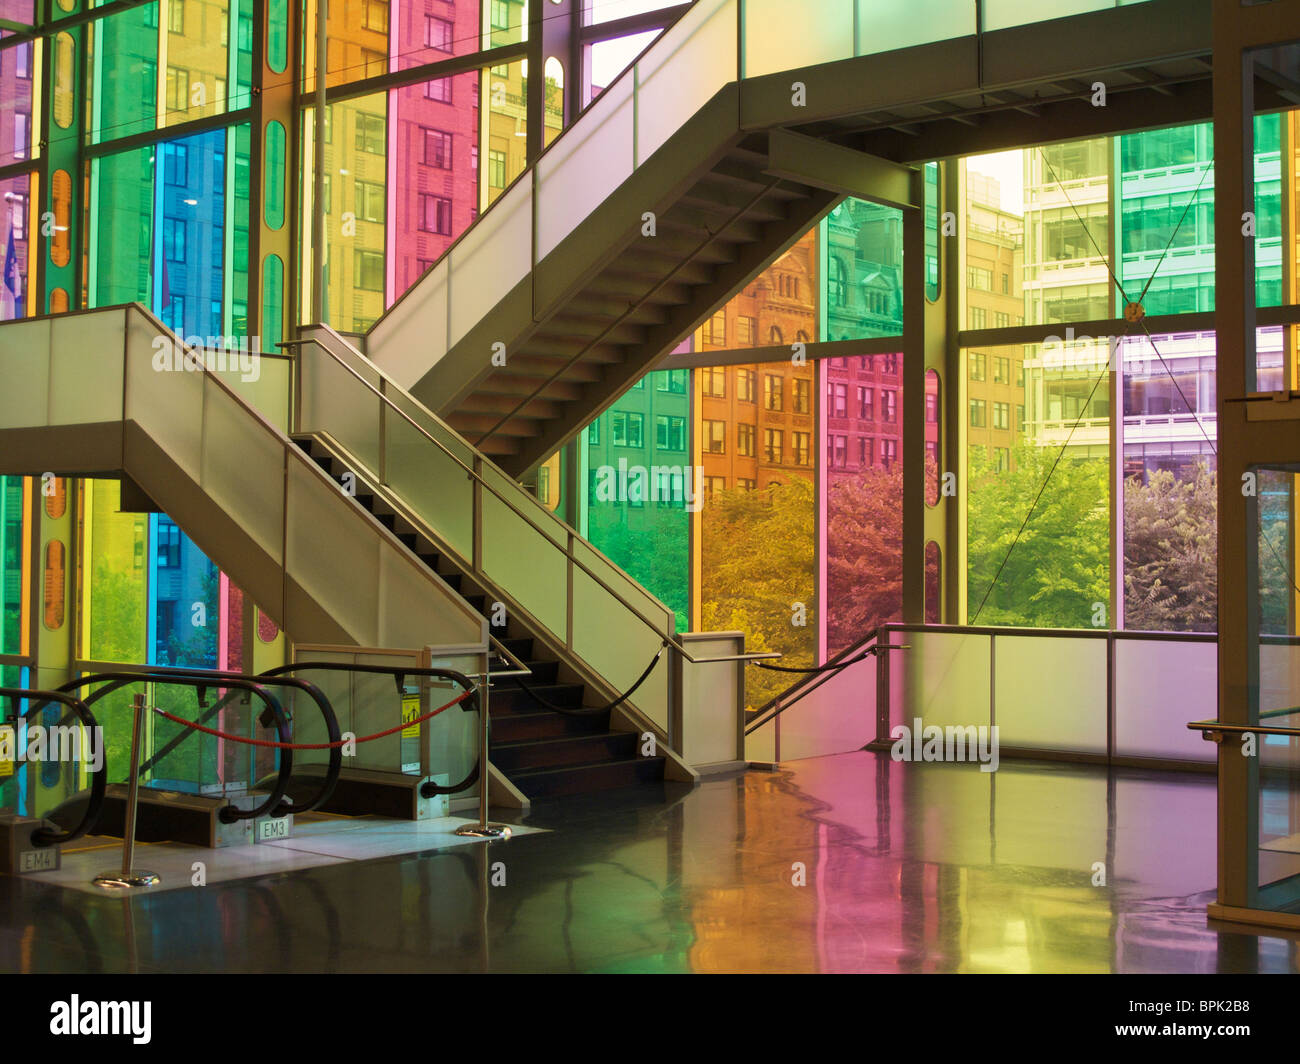 Vitres teintés et escalier. Palais des congrès. Montréal (QC) Canada. Banque D'Images